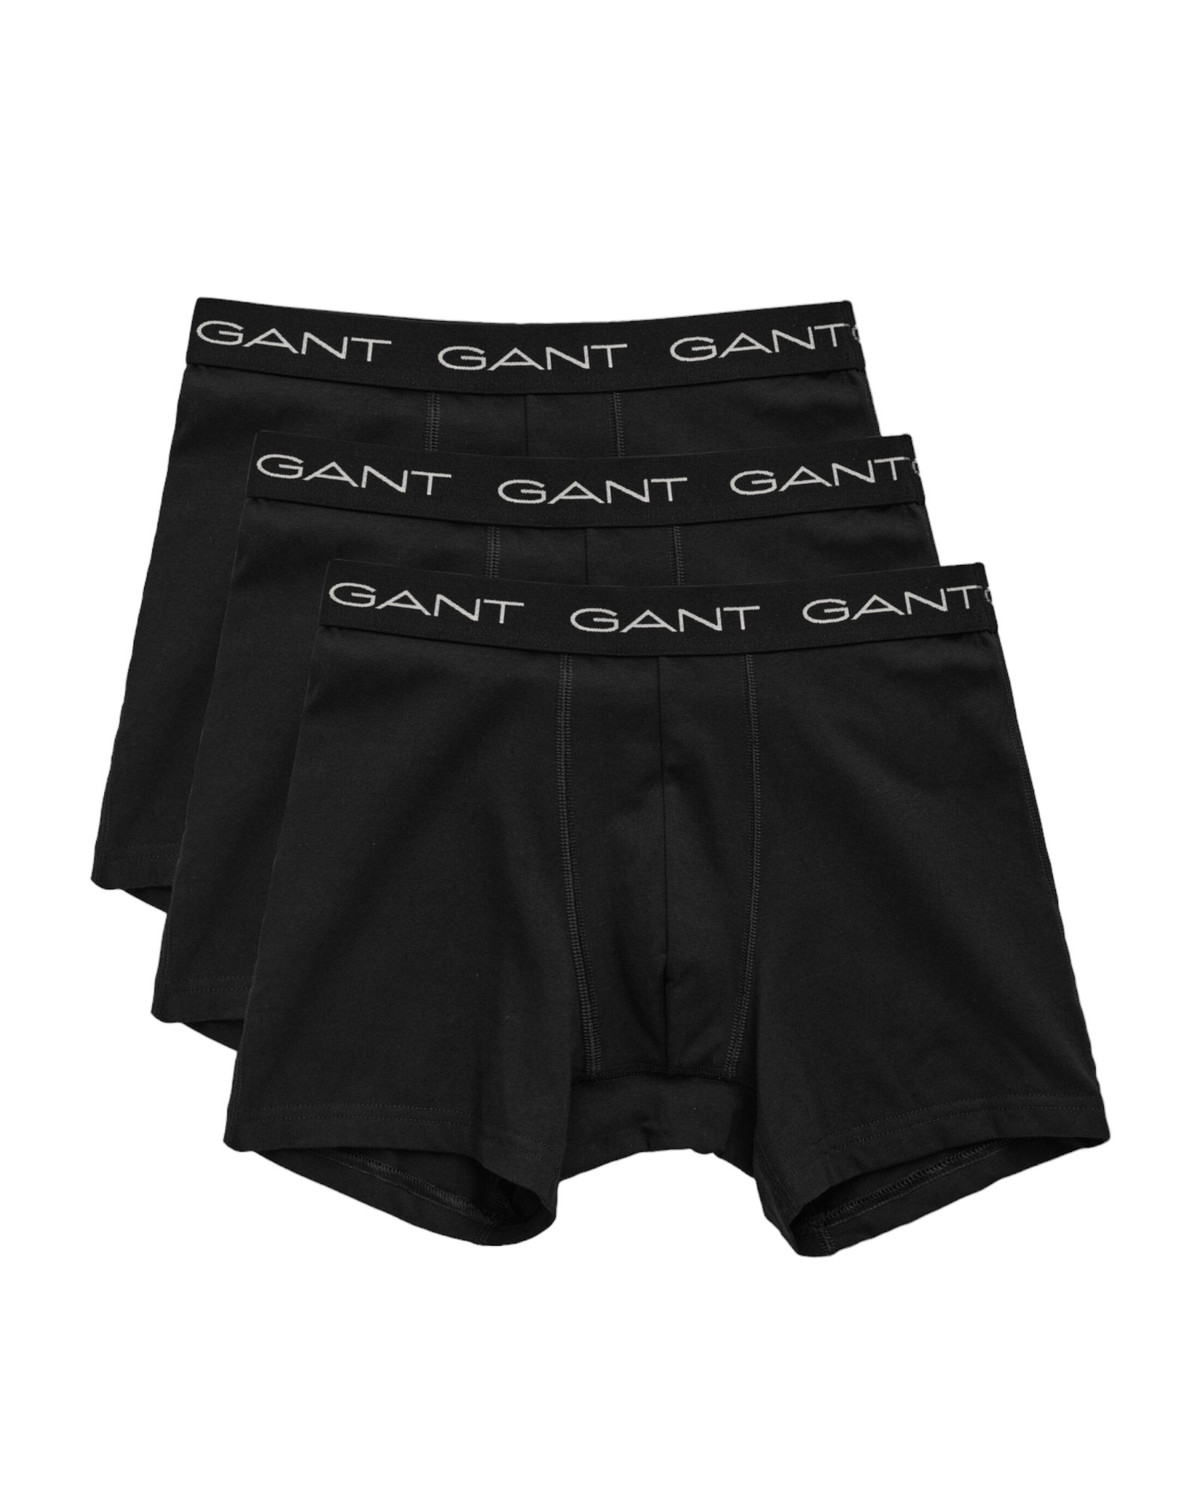 3PACK pánské boxerky Gant černé (900013004-005) XXL